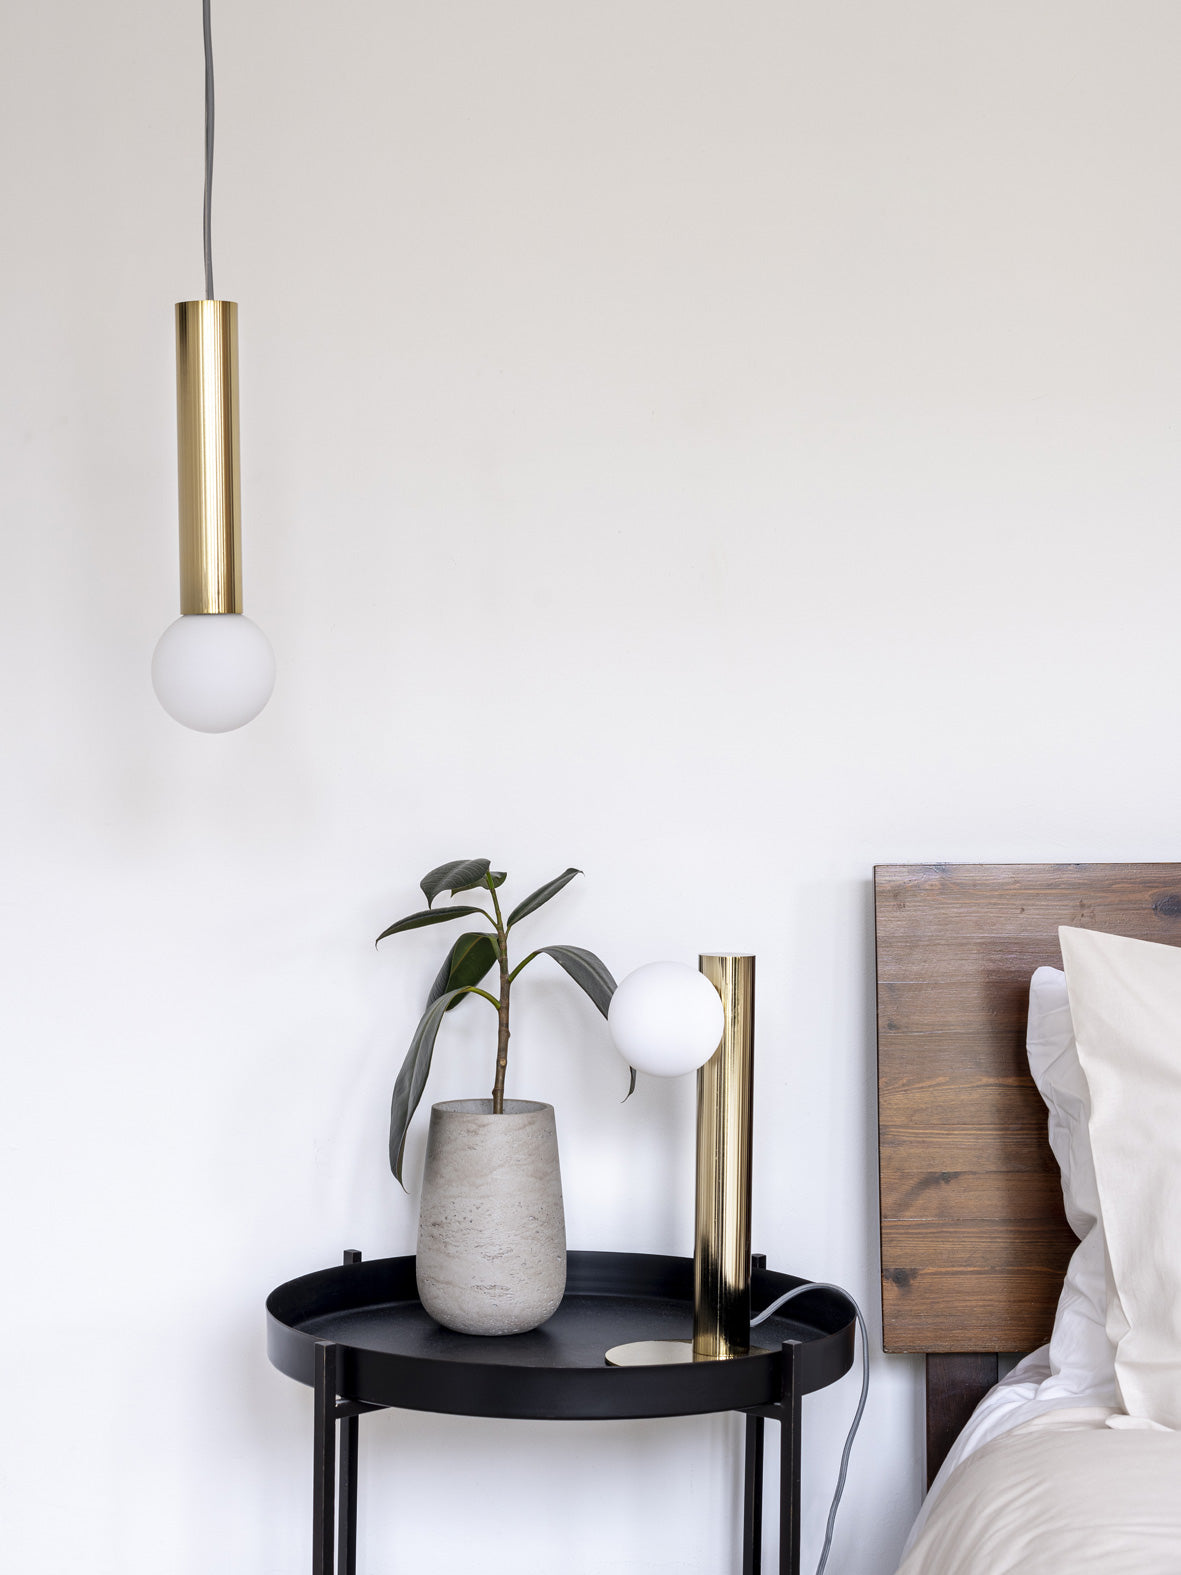 Chubes - 1 light brass ceiling pendant | Ceiling Light | Lights & Lamps | UK | Modern Affordable Designer Lighting